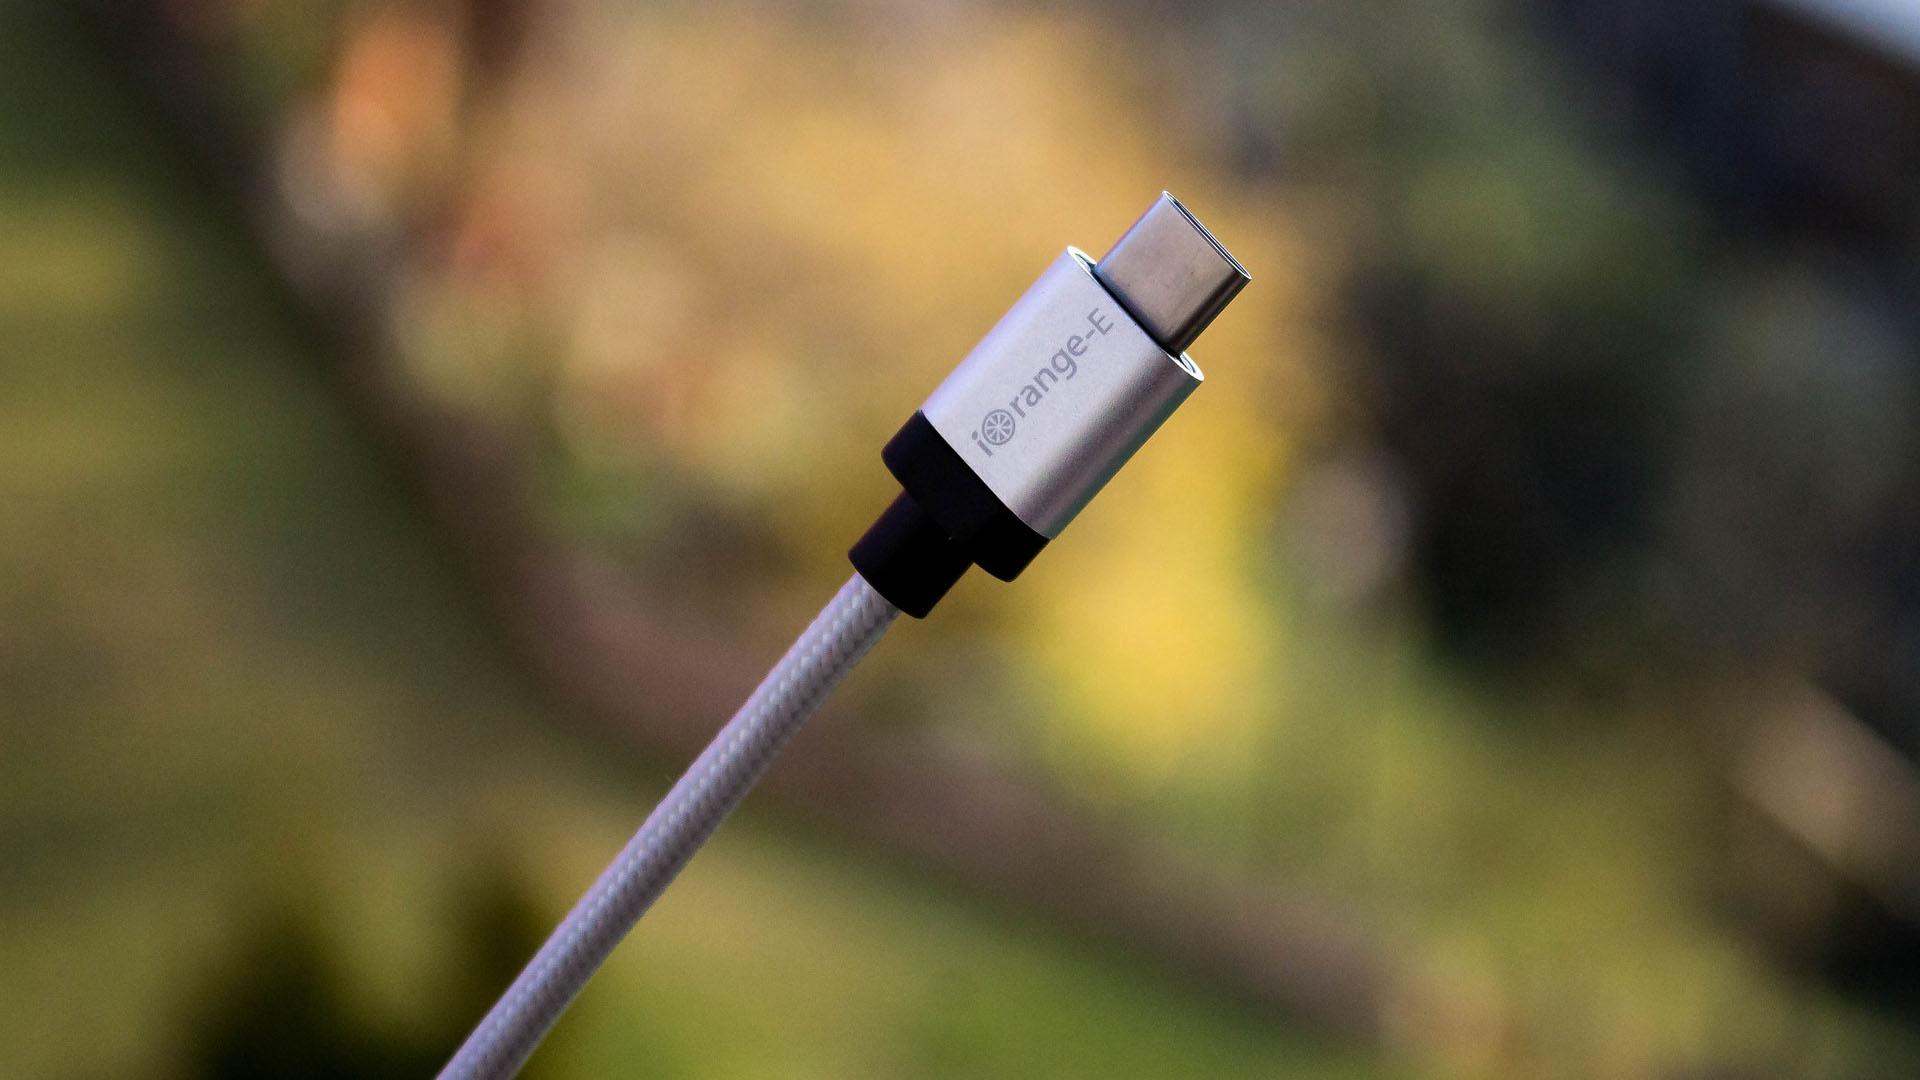 Falsche Kontakte oder Verbindungen: Überprüfen Sie, ob der USB-Stecker richtig angeschlossen ist.
Beschädigte USB-Kabel: Überprüfen Sie das Kabel auf Risse oder abgenutzte Stellen.